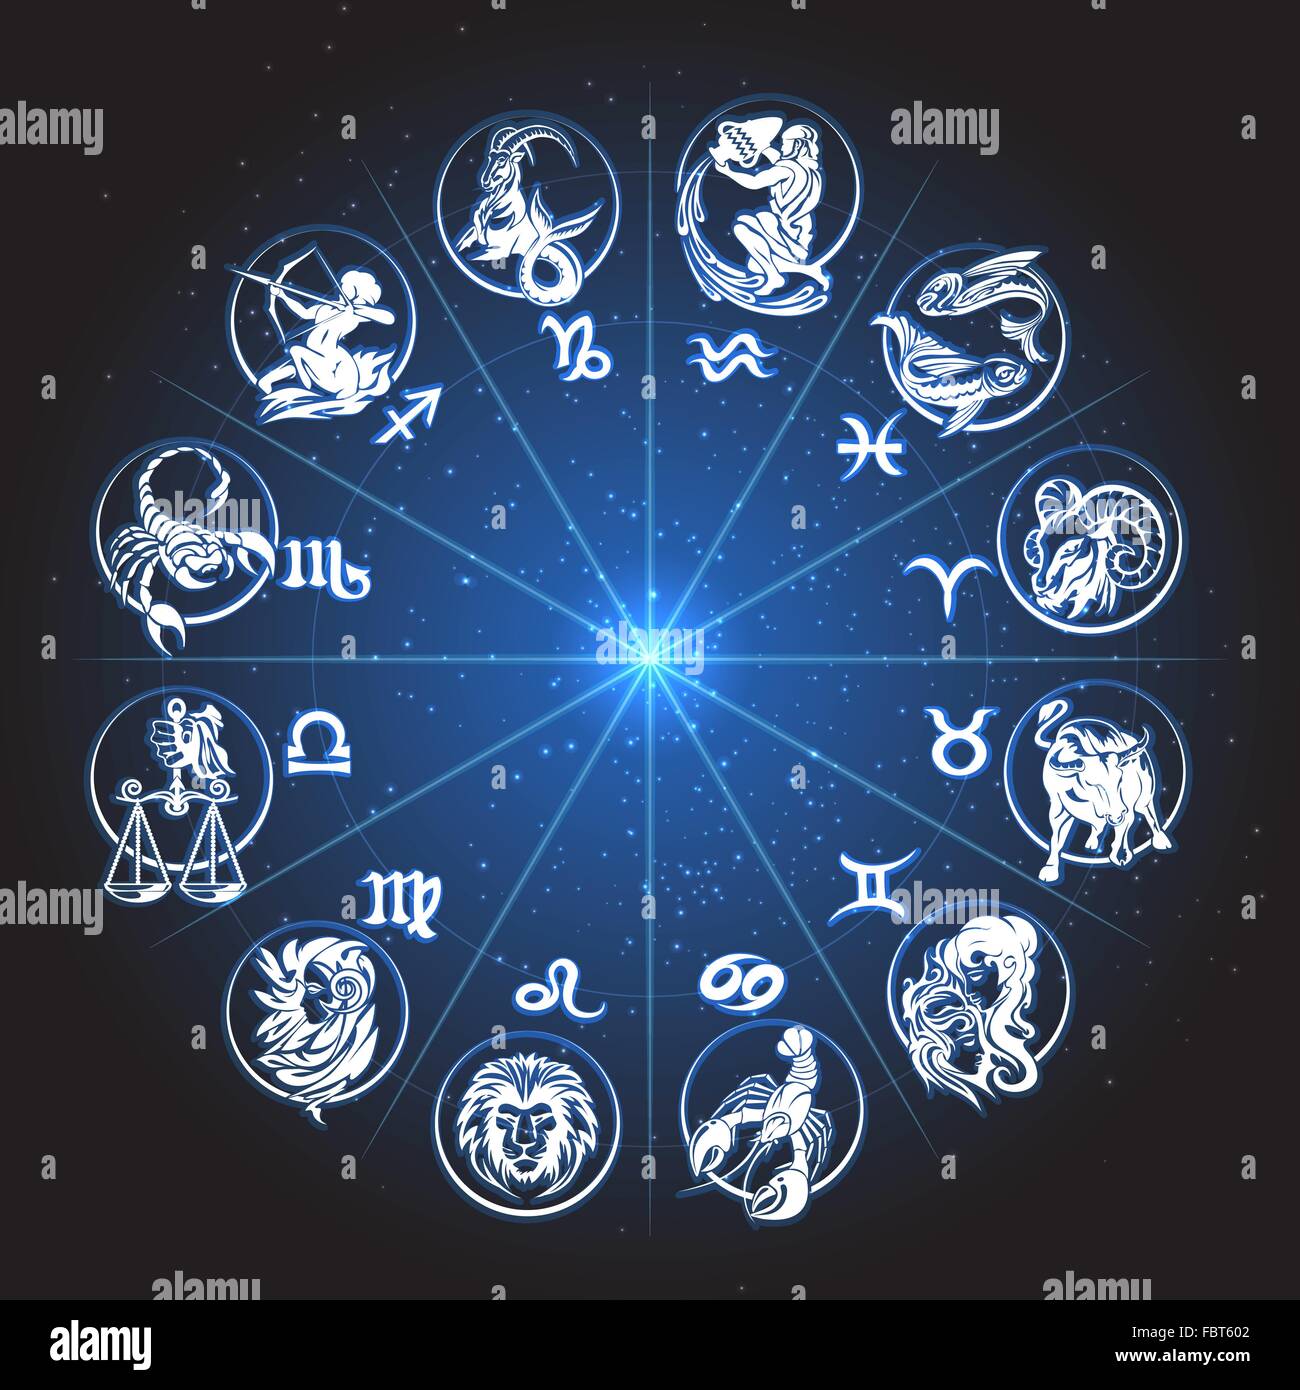 Horoscope zodiacal circle. Signes contre ciel de nuit avec des étoiles. Illustration de Vecteur